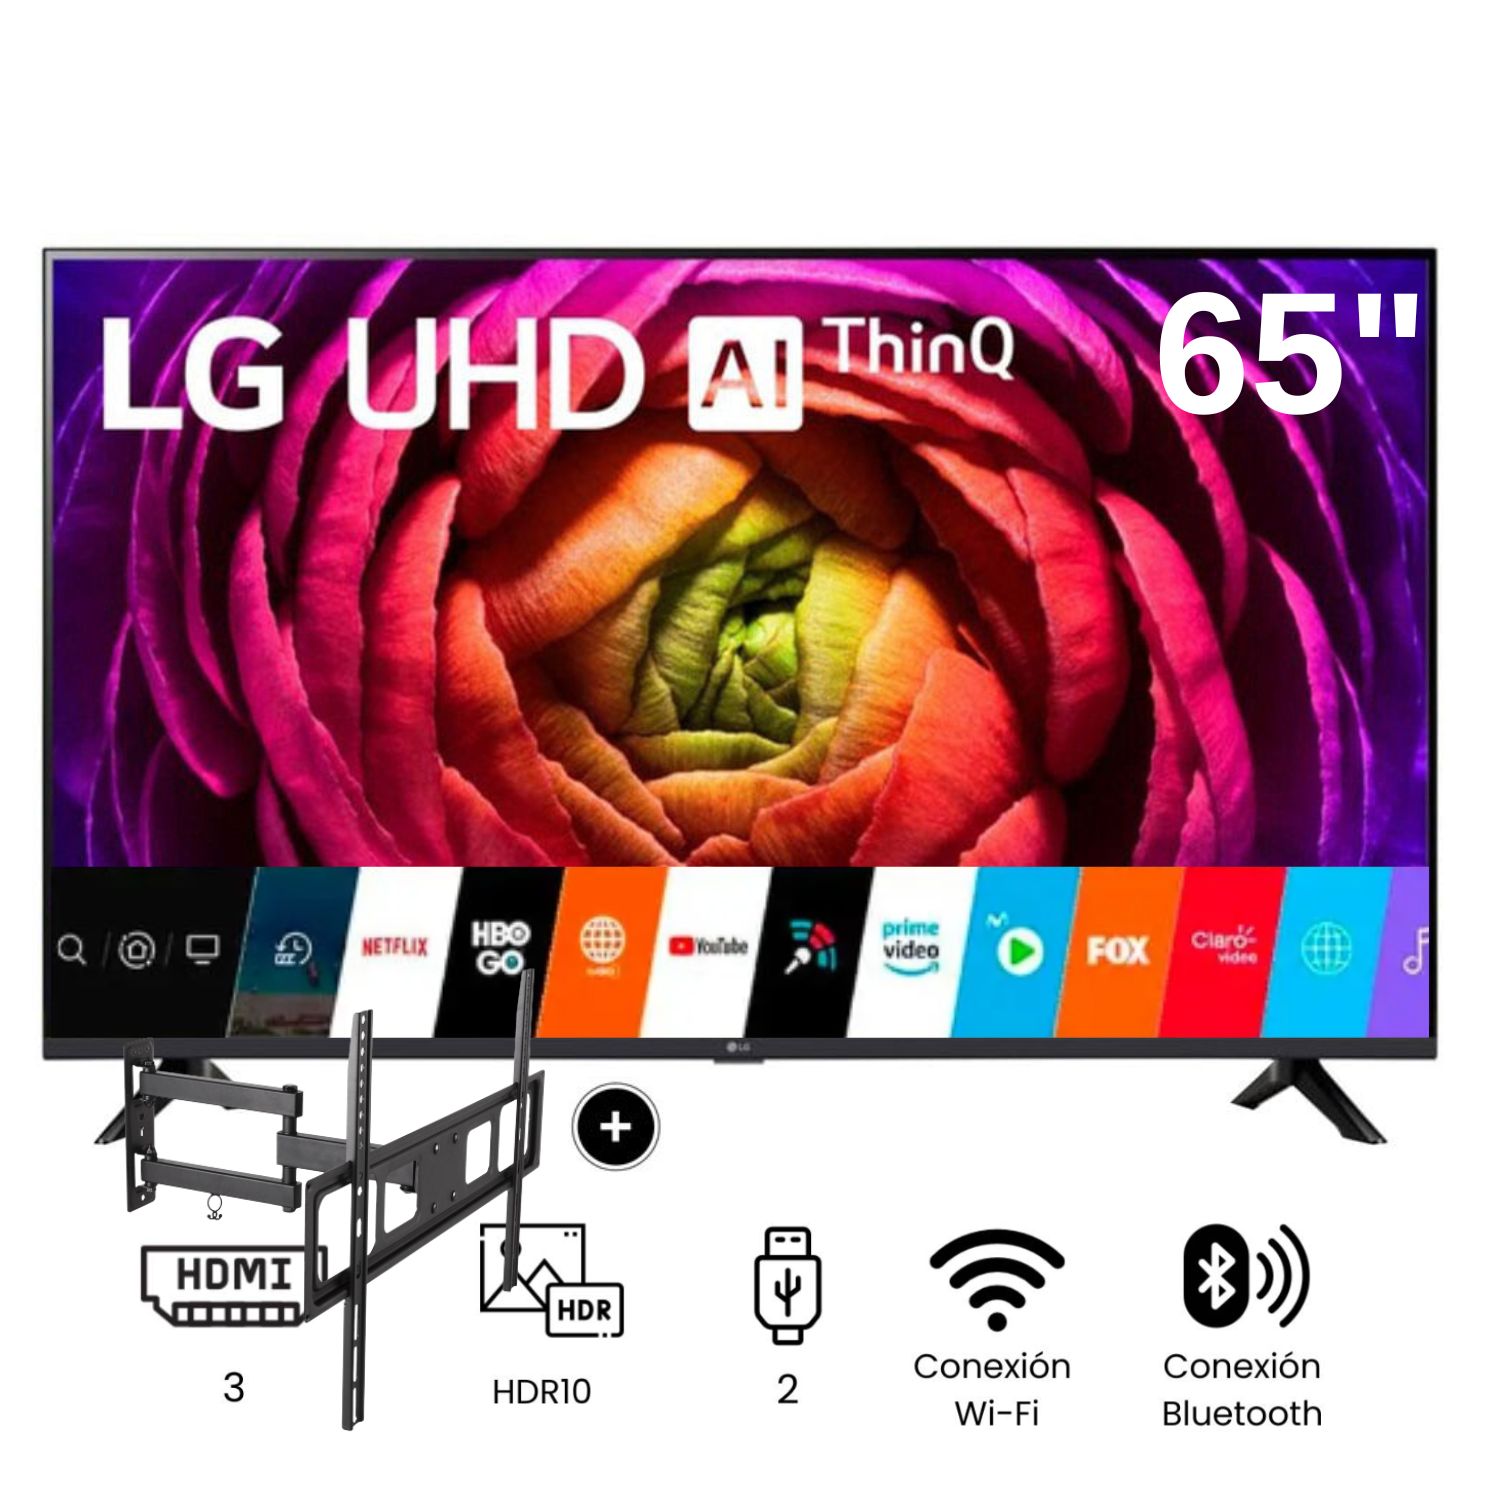 Televisor LG LED  Smart TV 65'' UHD 4K ThinQ AI 65UR7300 + Rack Giratorio